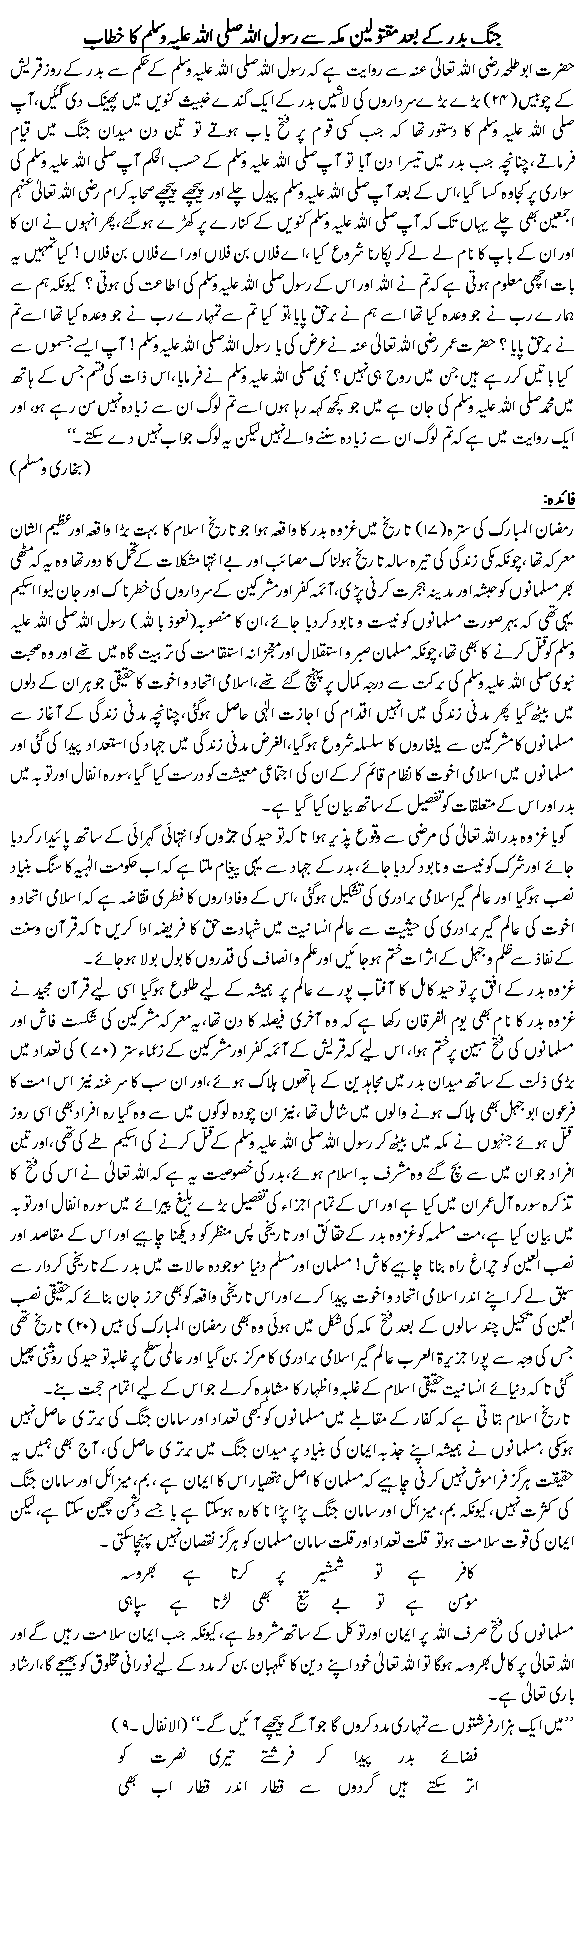 Gang-e-Badar kay bad maktuleen makkah say Rasool S.A.W ka khitab